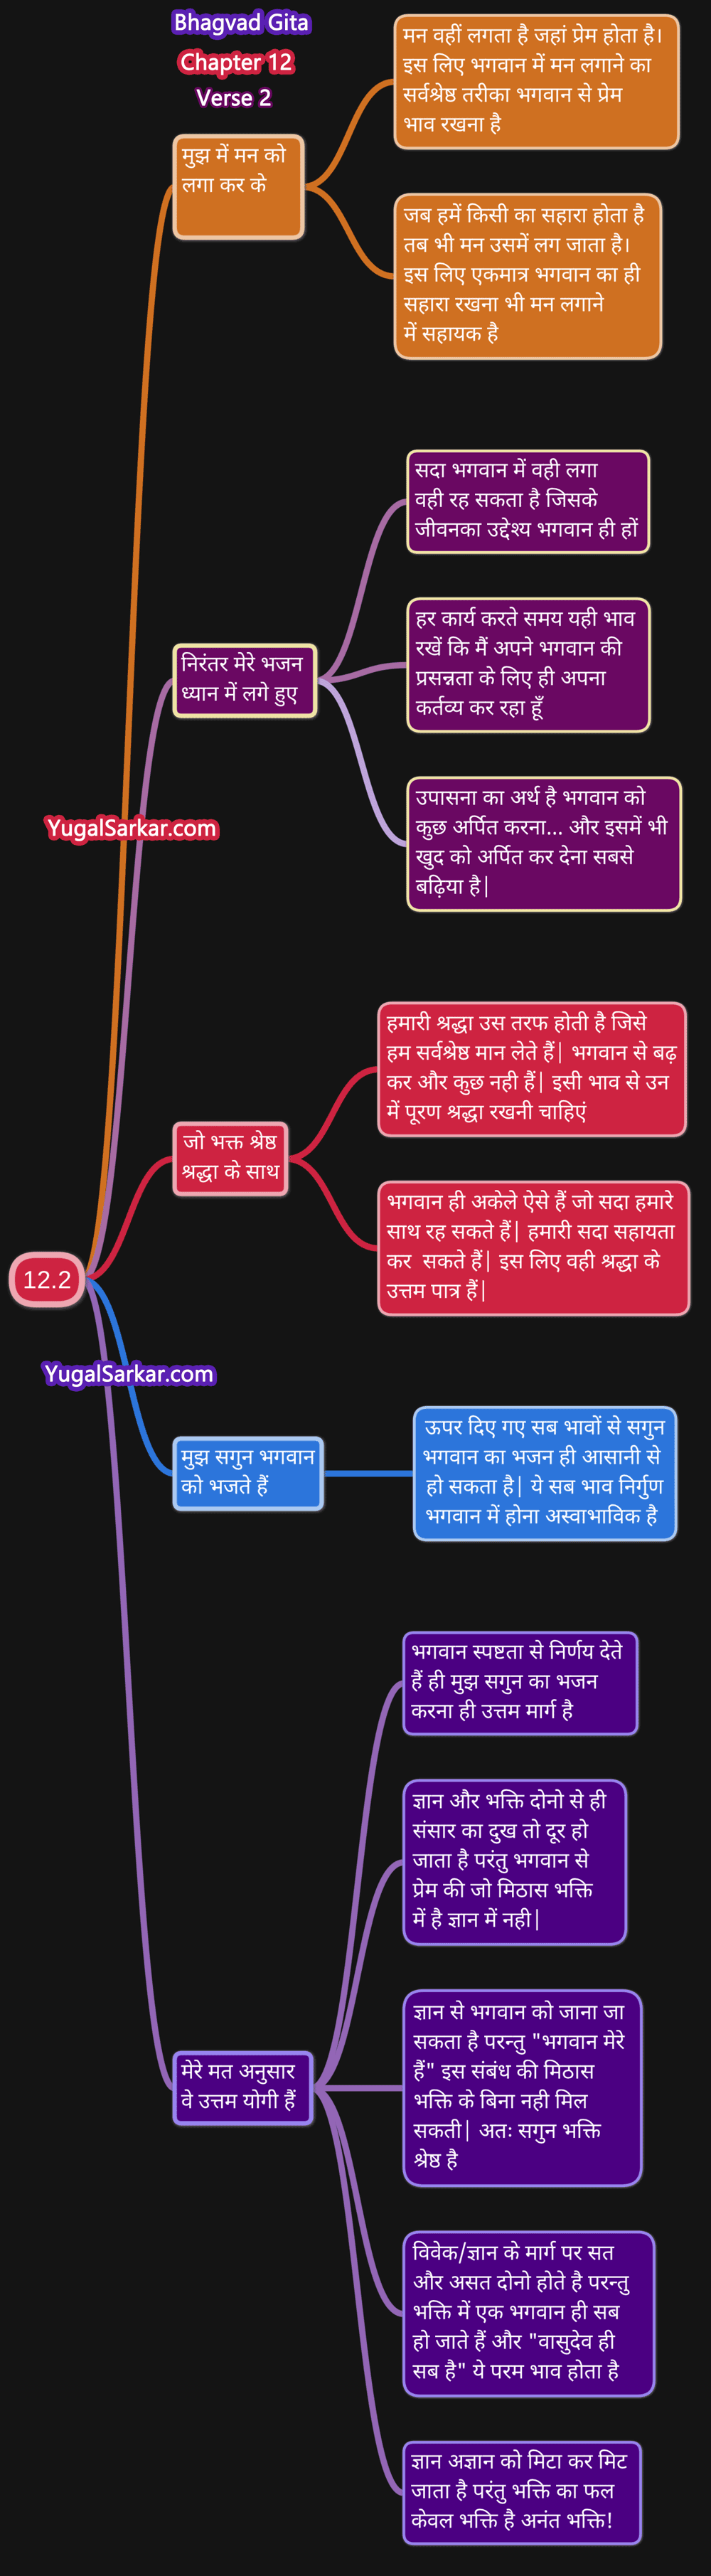 Bhagavad Gita Chapter 12 Verse 2  भगवद् गीता अध्याय 12 श्लोक 2